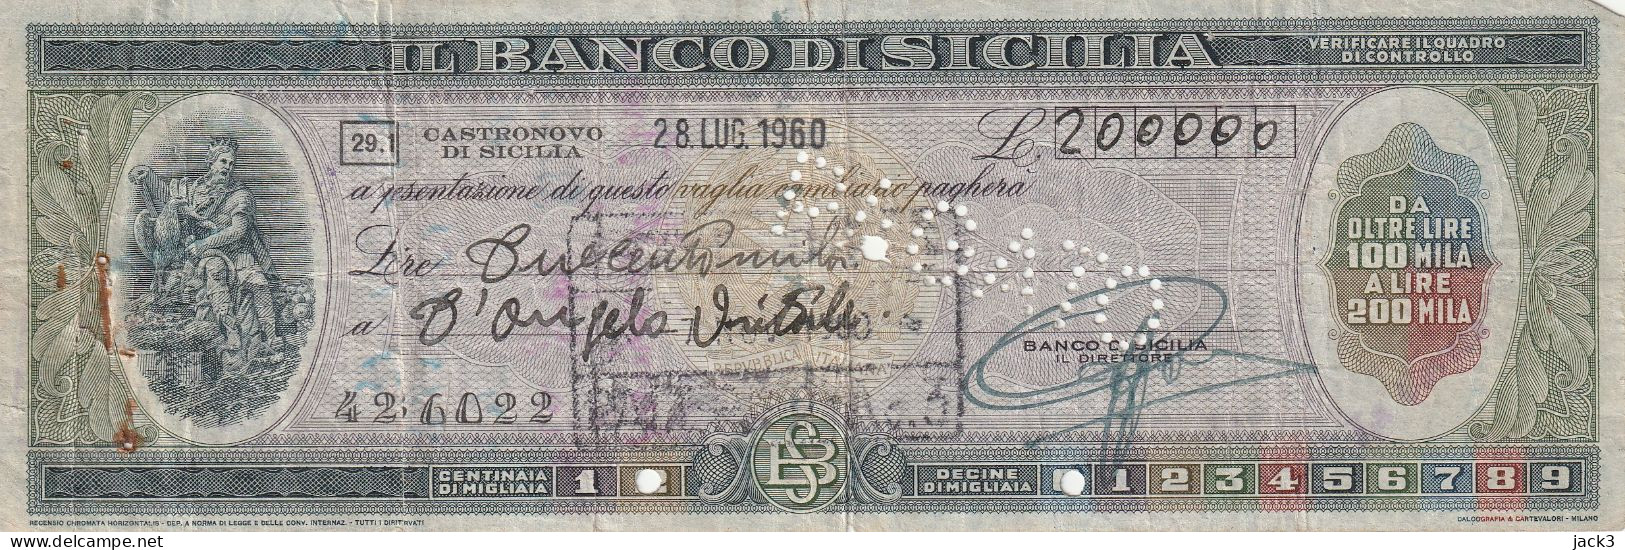 ASSEGNO - BANCO DI SICILIA - CASTRONOVO DI SICILIA 1960 - Cheques & Traverler's Cheques